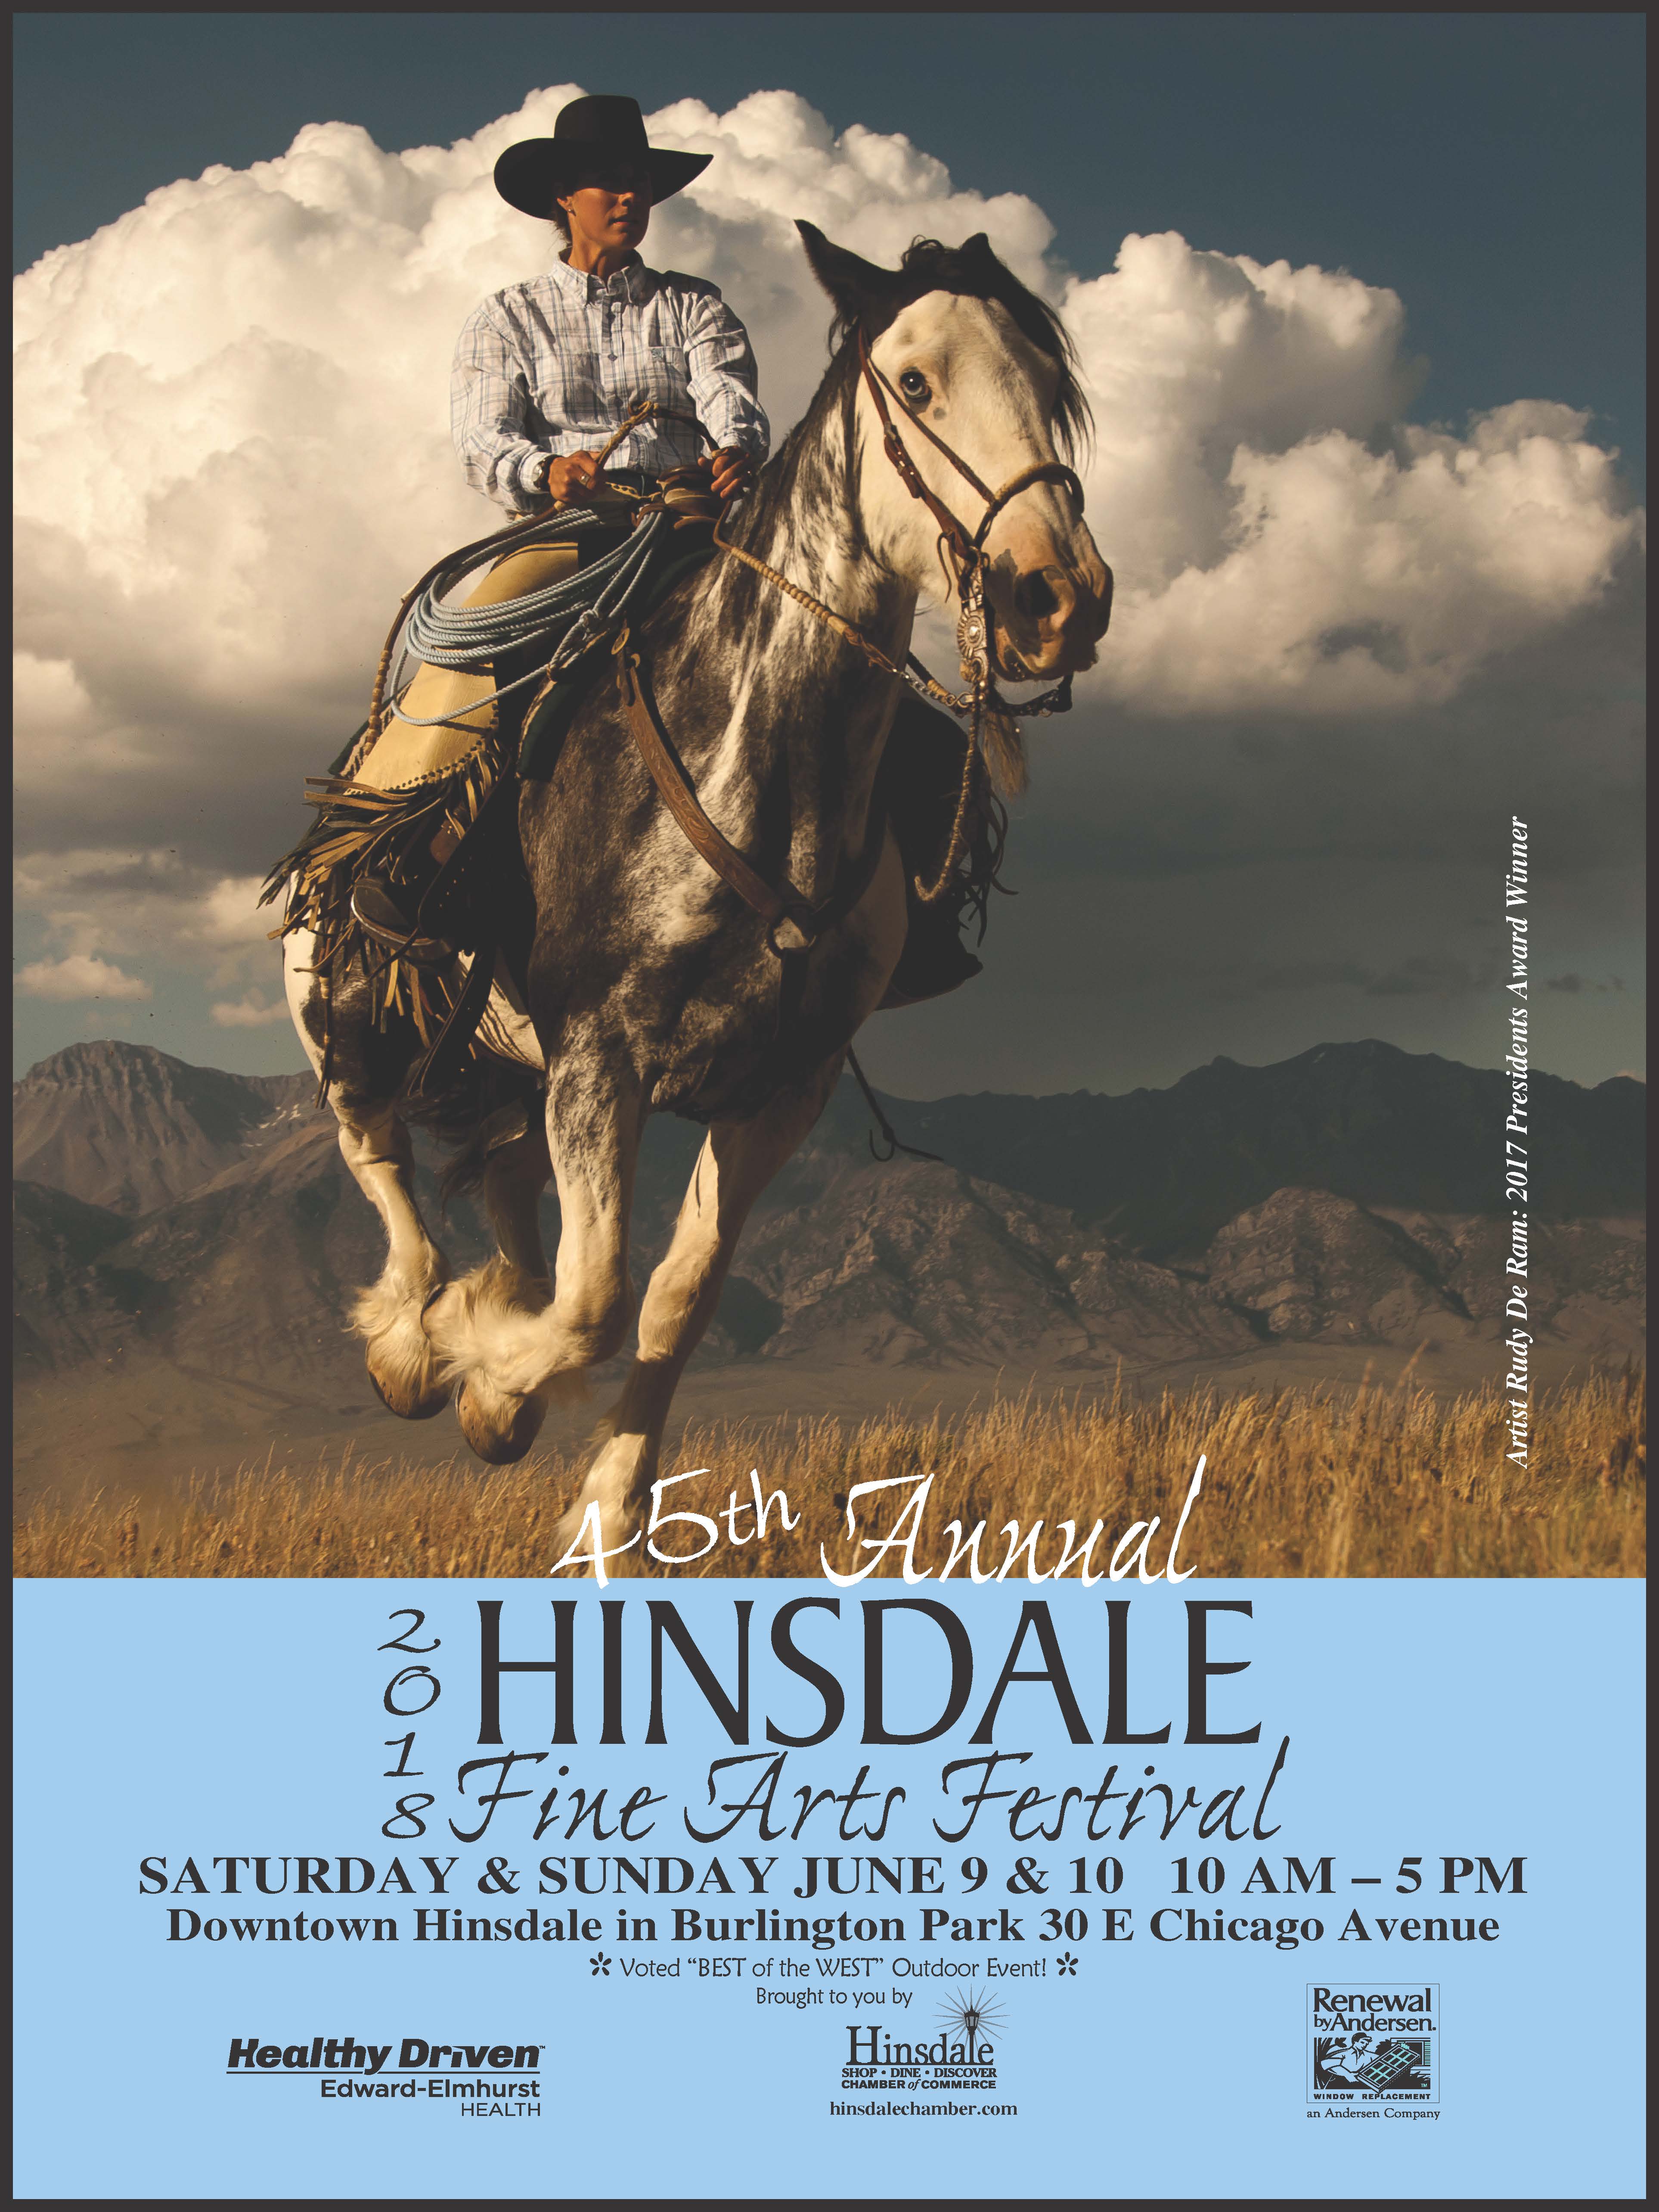 Hinsdale Art Festival June 9 10 2018 Hinsdale Illinois BoredomMD com